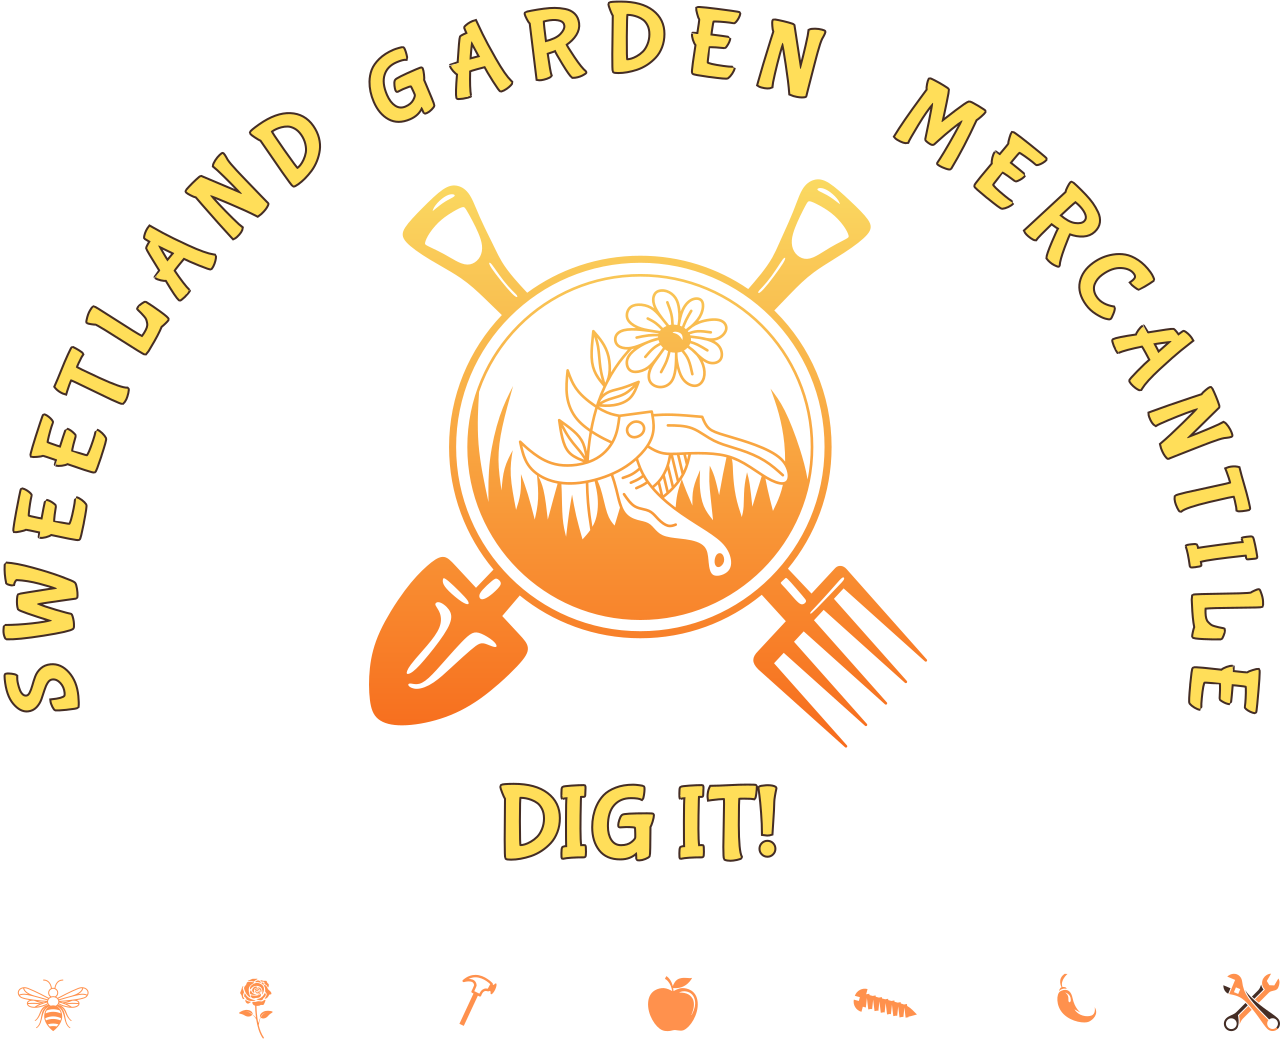 SWEETLAND GARDEN  MERCANTILE's logo